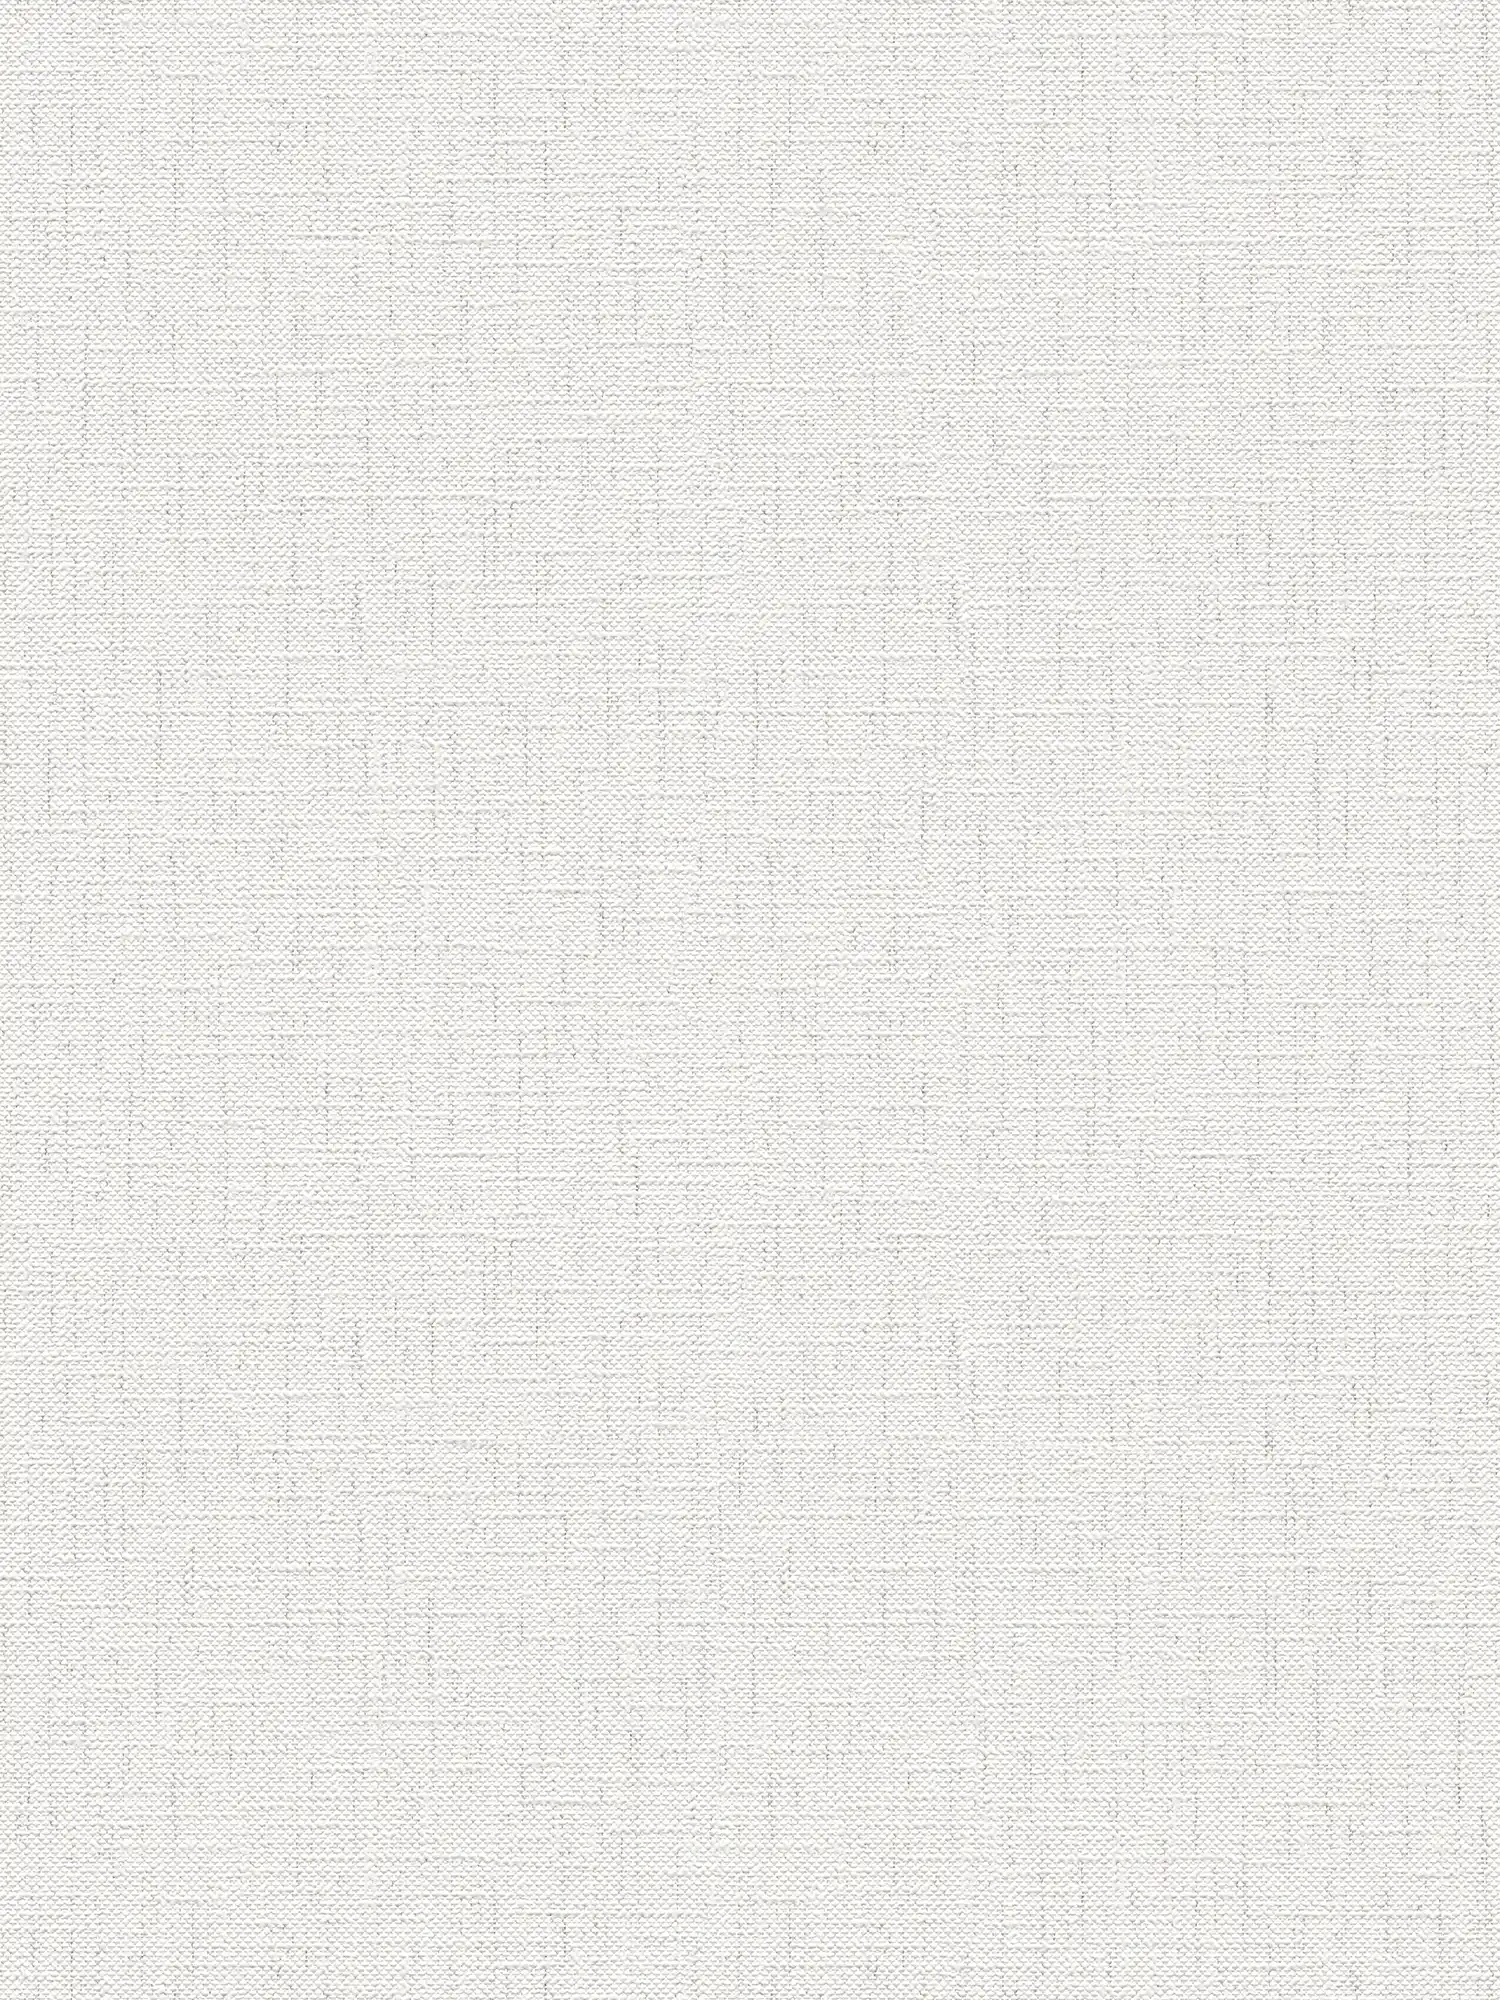 Textiel look Papierbehang met bonte kleuren - grijs, wit
